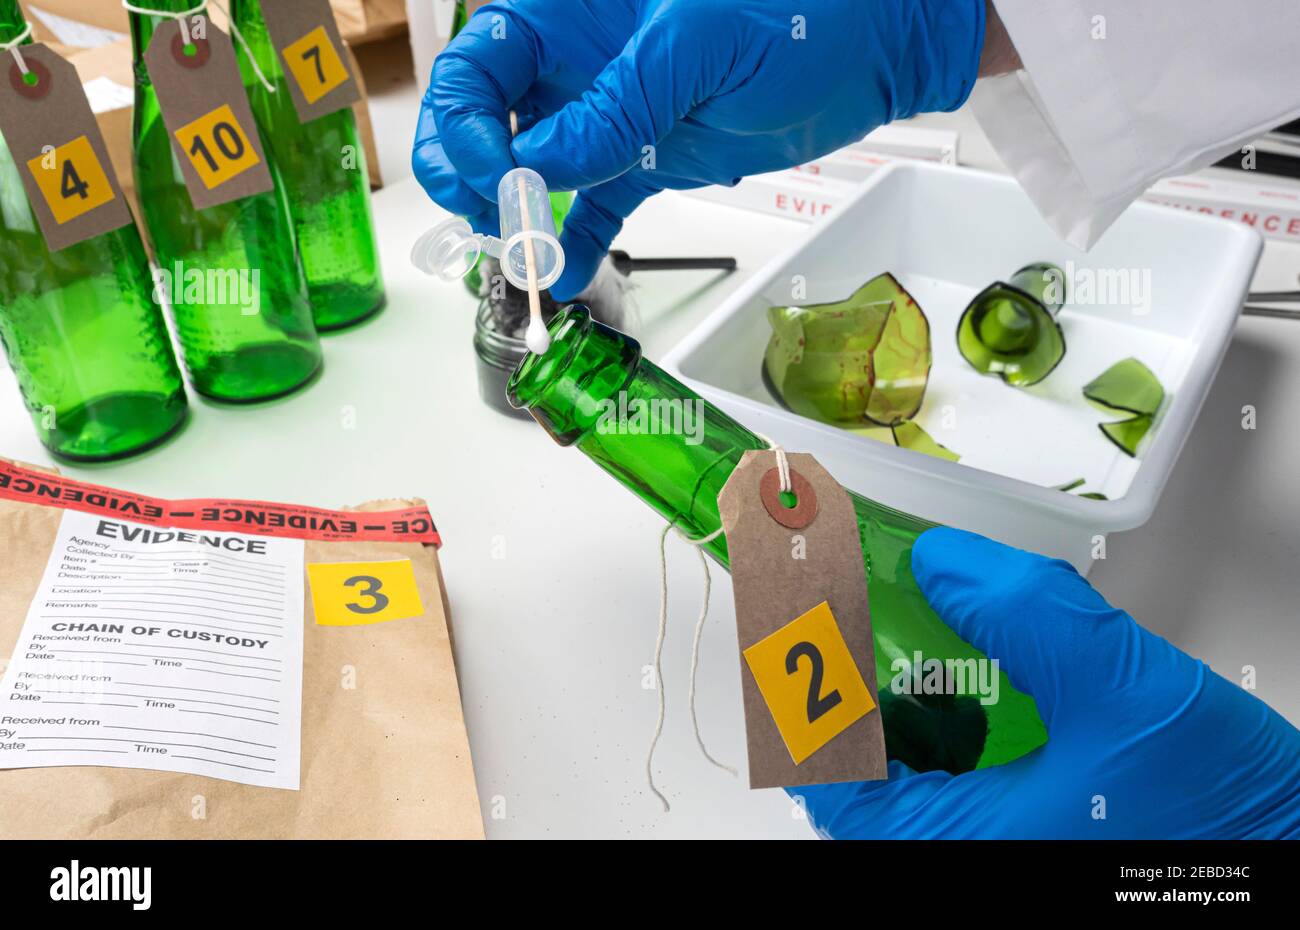 Polizeiexperte holt Blutprobe aus einer grünen Glasflasche im Kriminalistischen Labor, konzeptuelles Bild Stockfoto